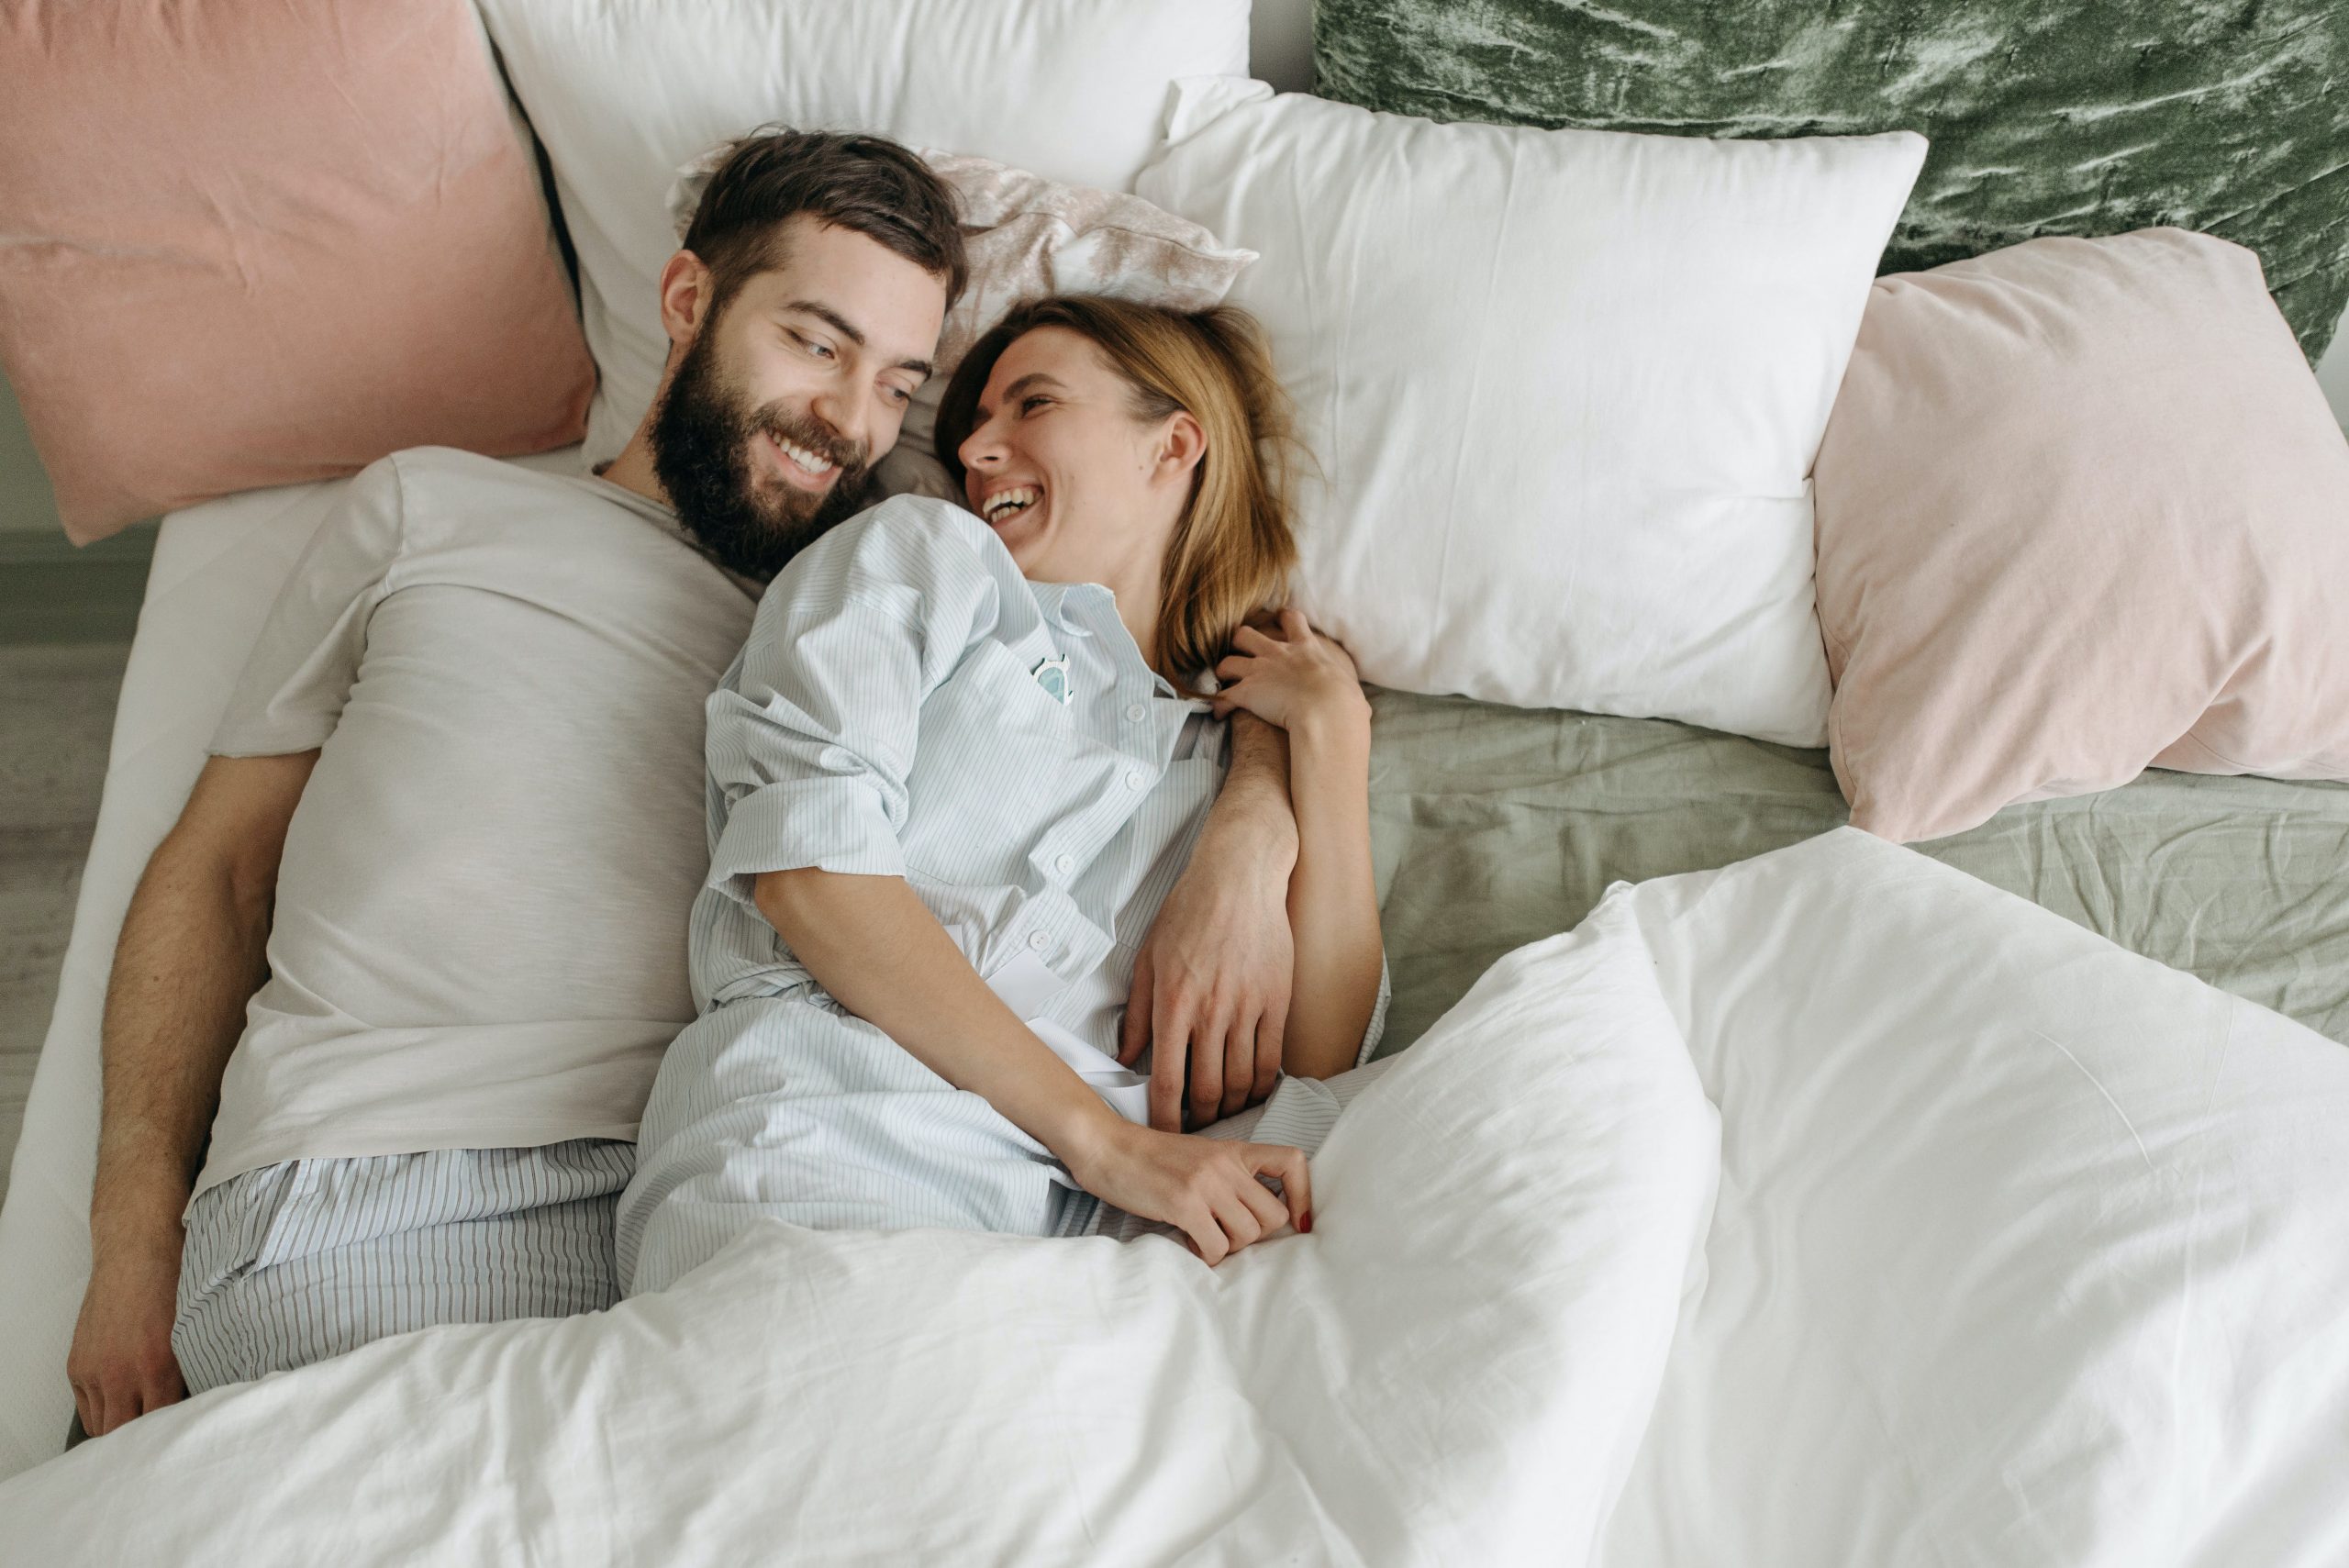 Scandinavian sleep method: the secret to good sleep